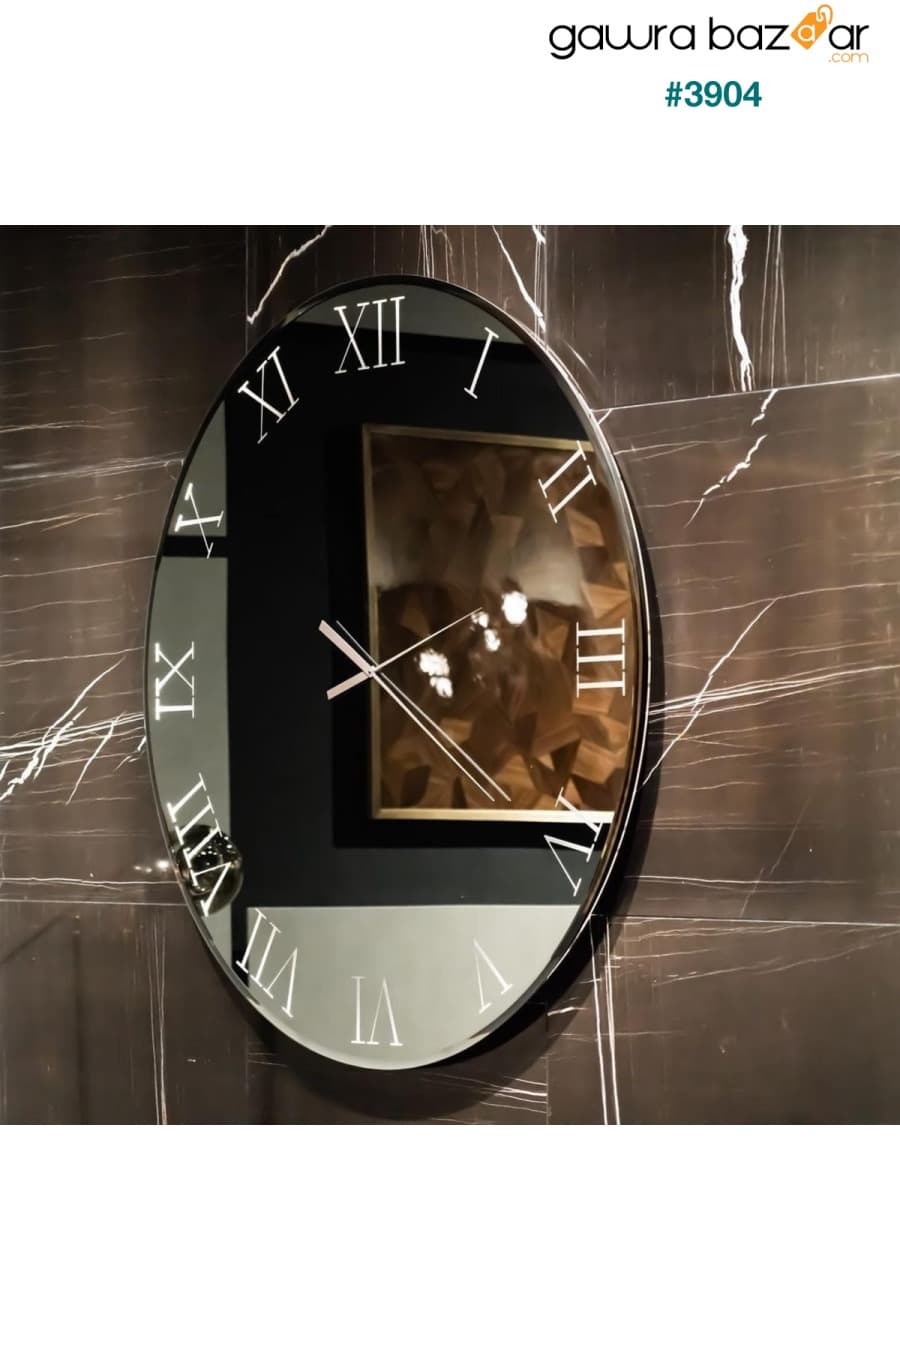 ساعة حائط مزخرفة بمرآة حقيقية (40 سم) harika crown 0